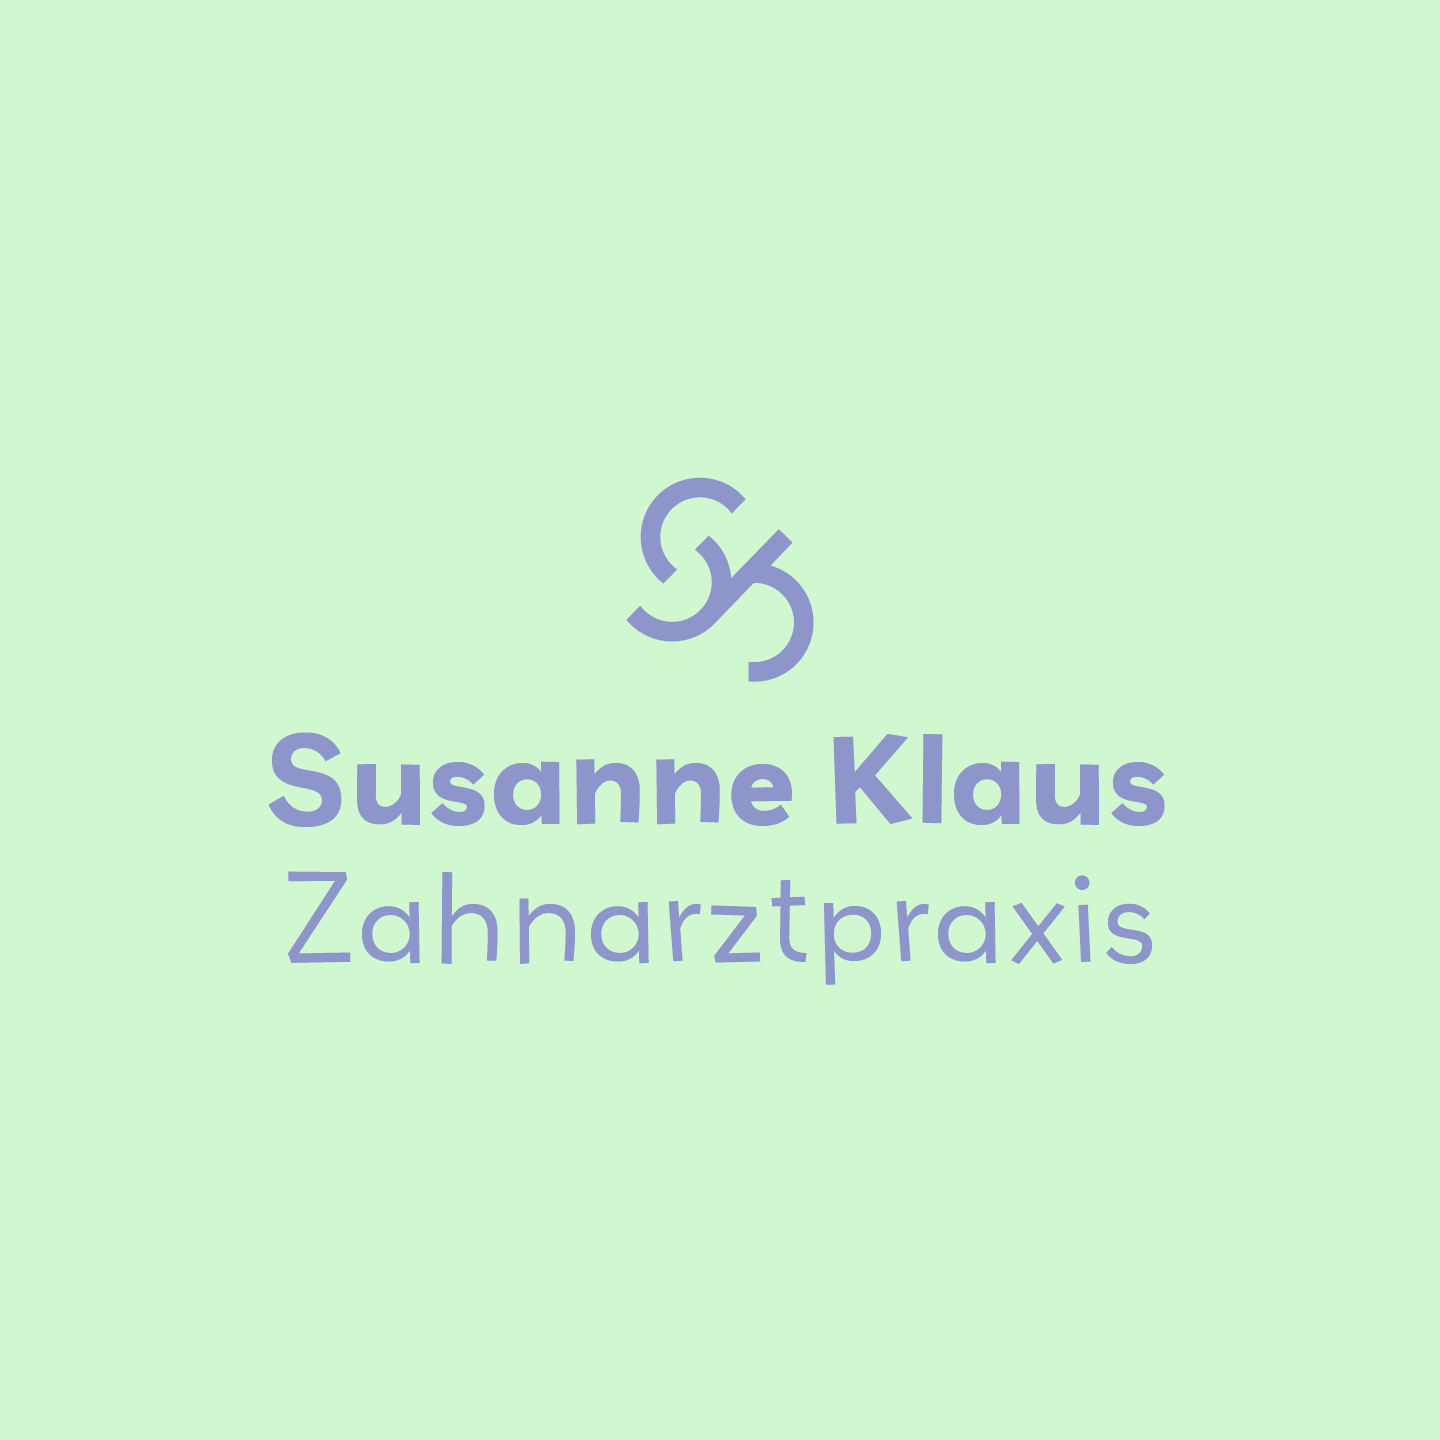 Klaus-Zahnarzt-Logo